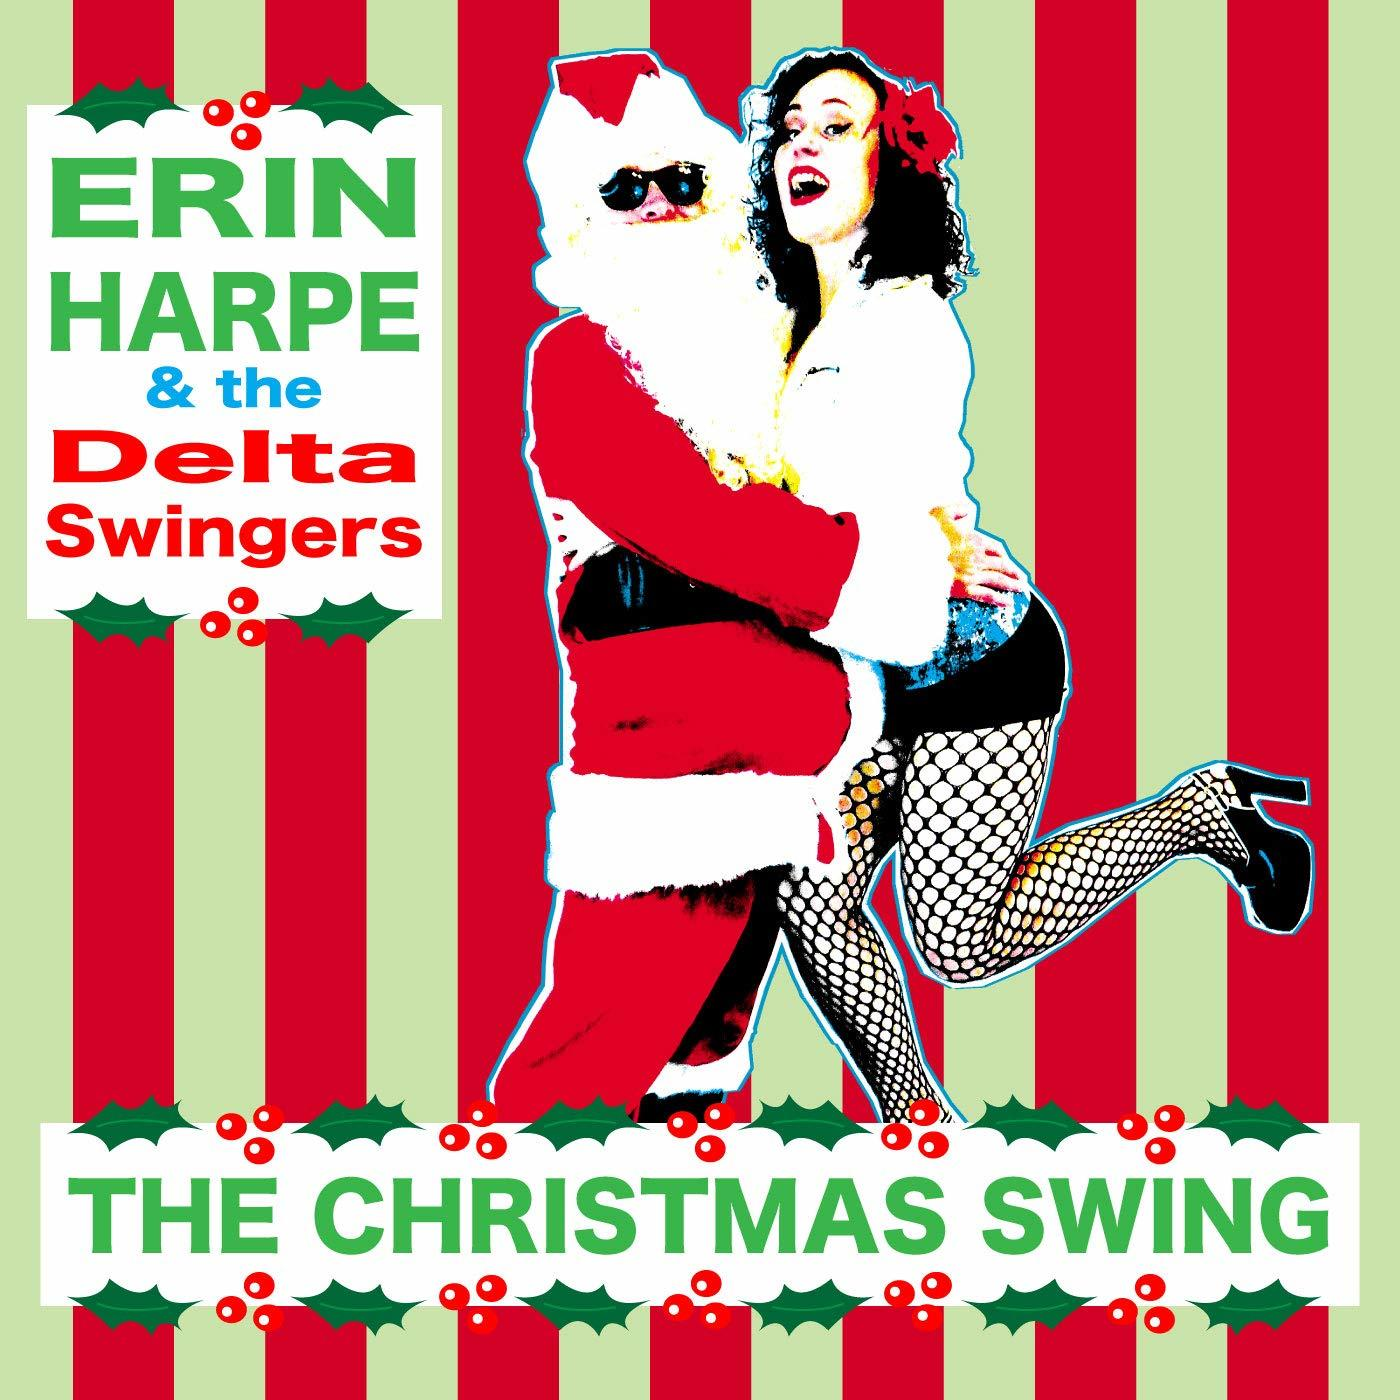 SWING CHRISTMAS Swingers- - Delta Harpe The Erin - (CD) -&